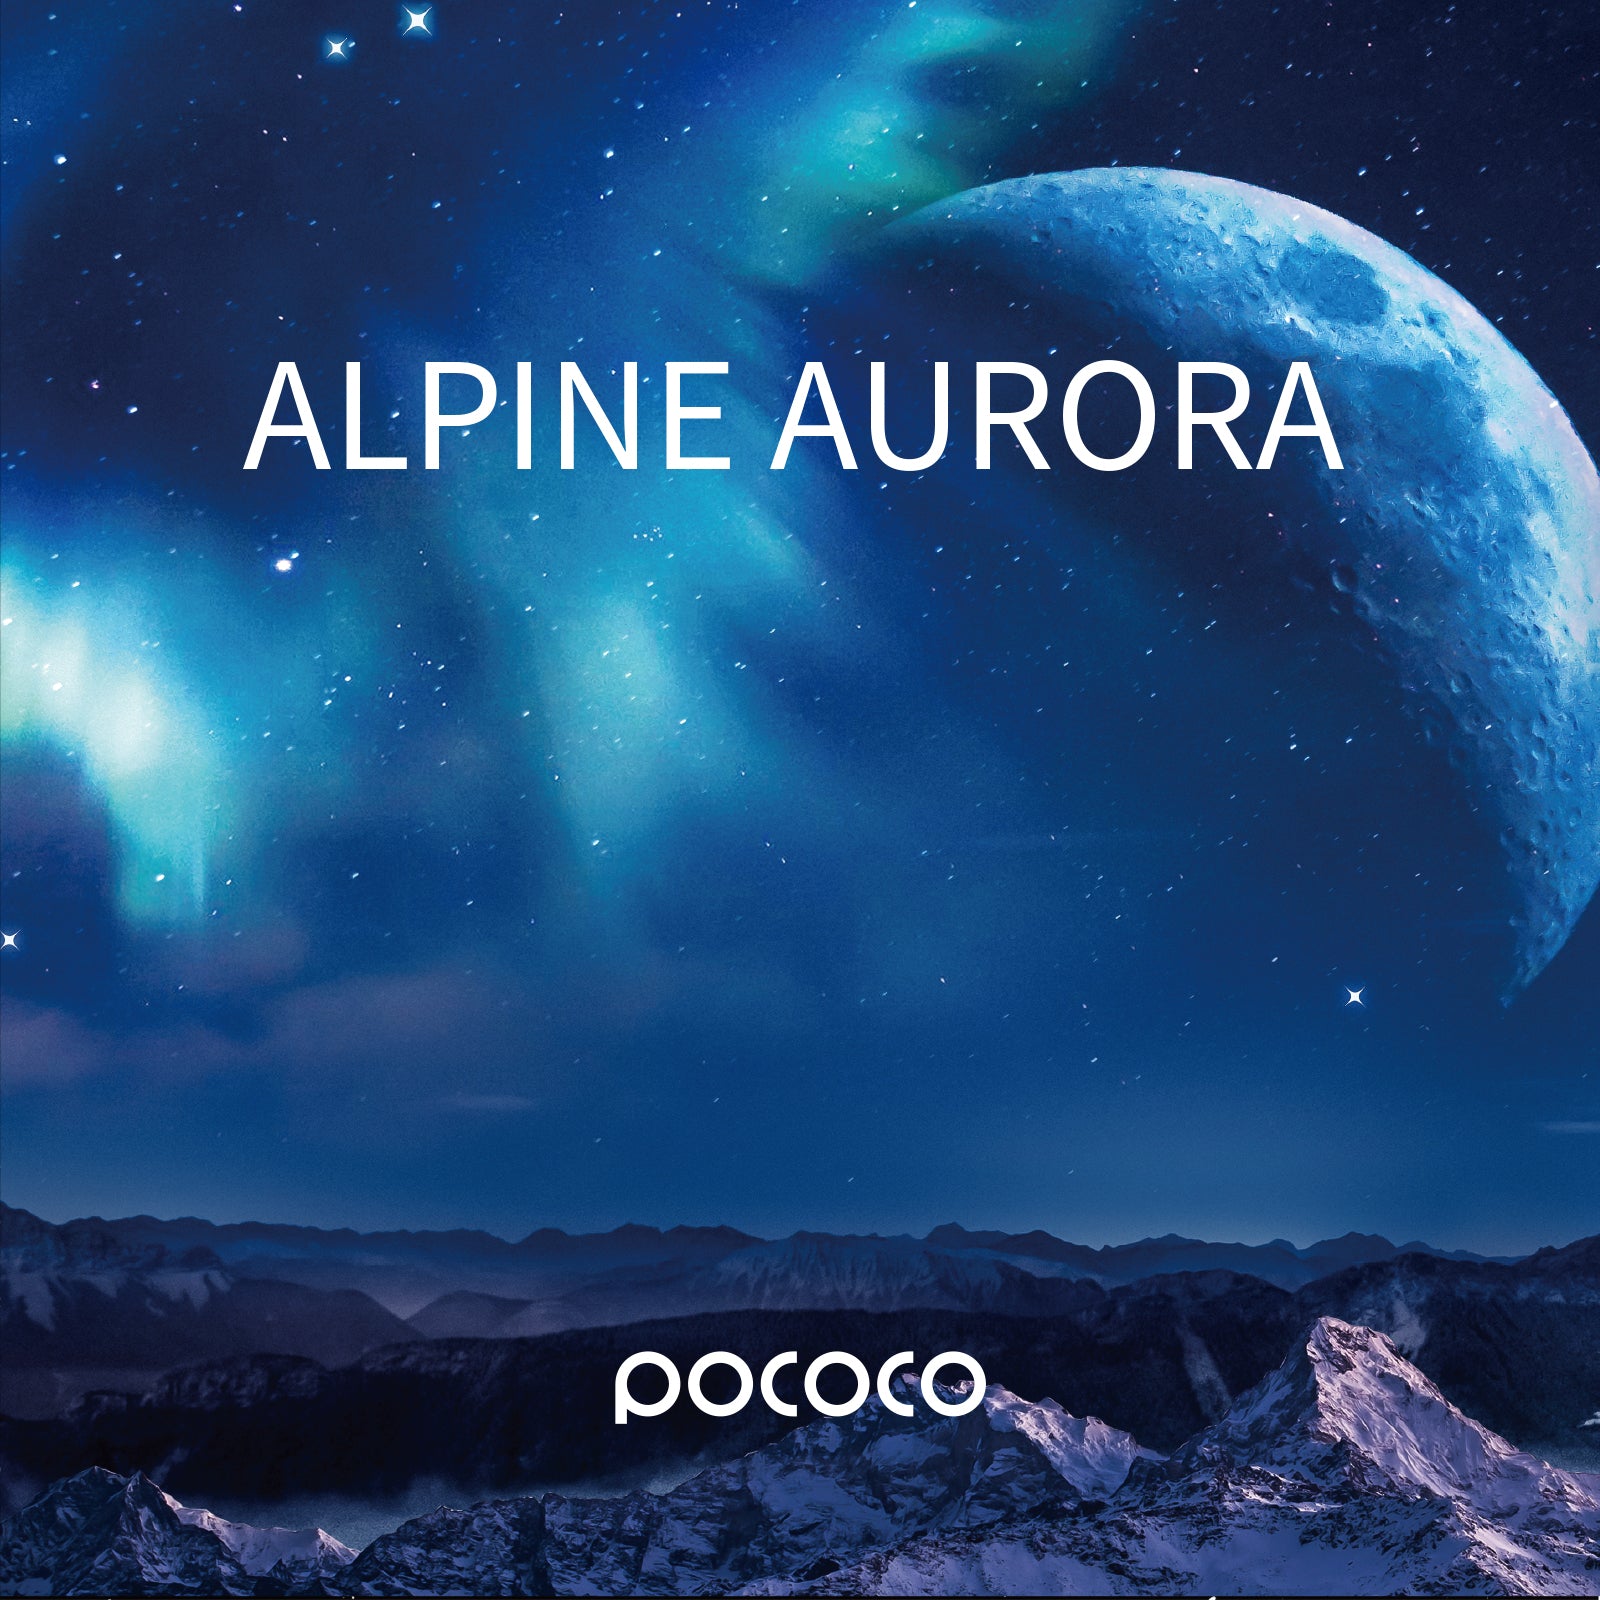 POCOCO Galaxy Projector Disc - Alpine Aurora